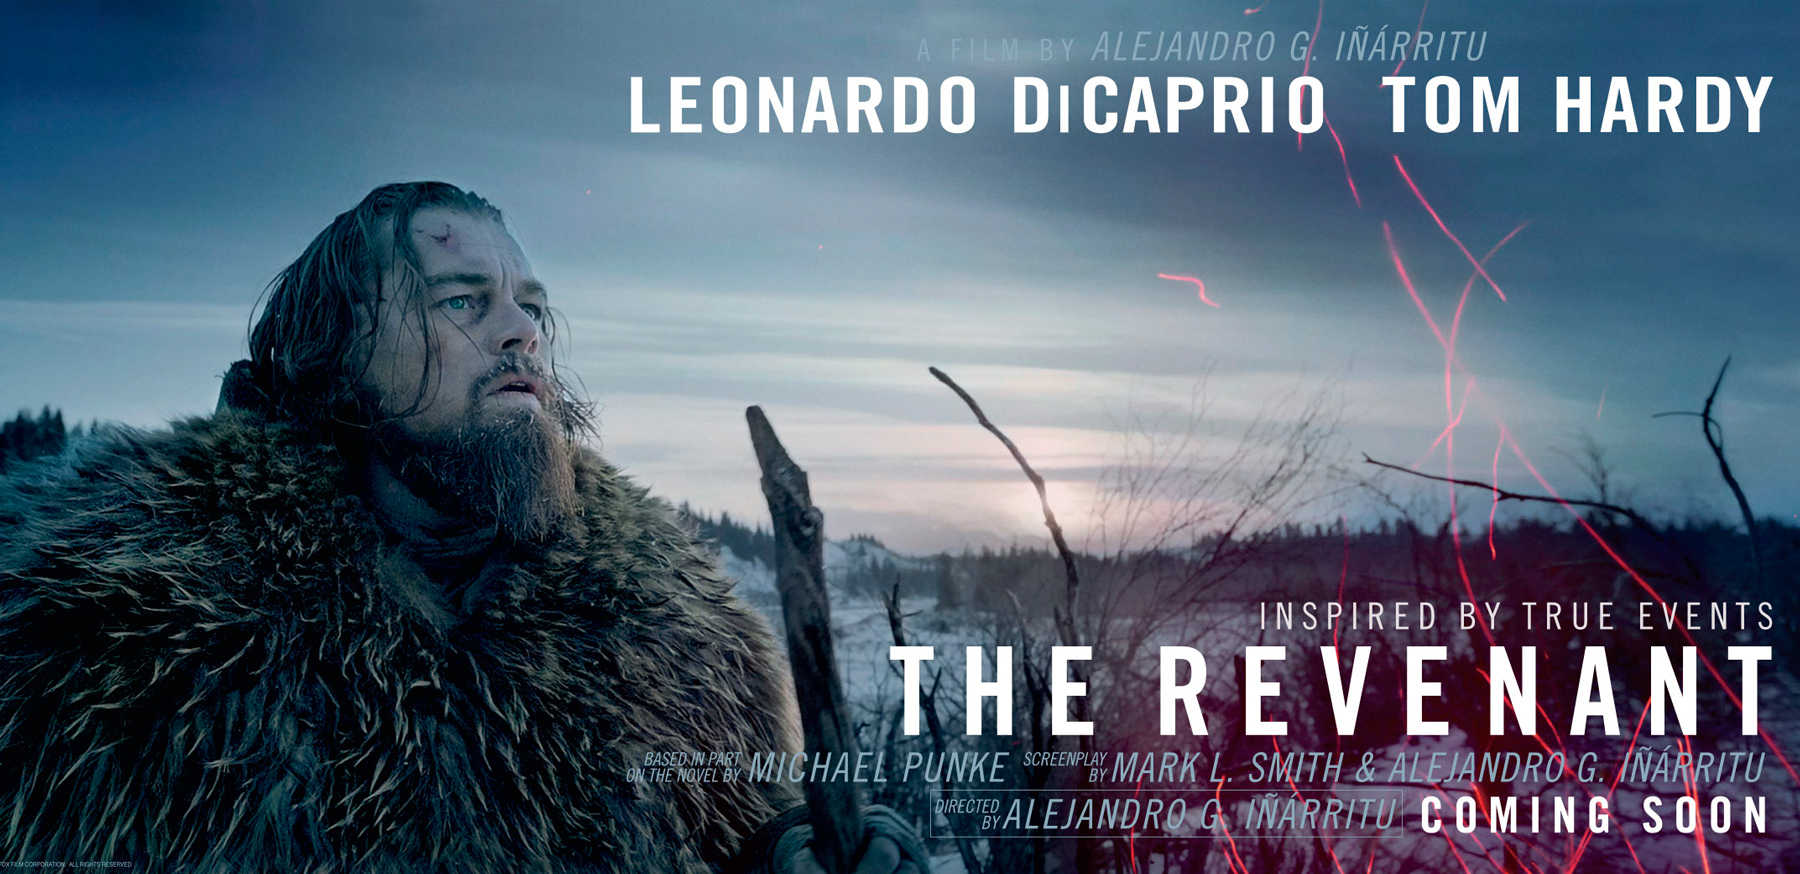 the revenant full movie online free pub